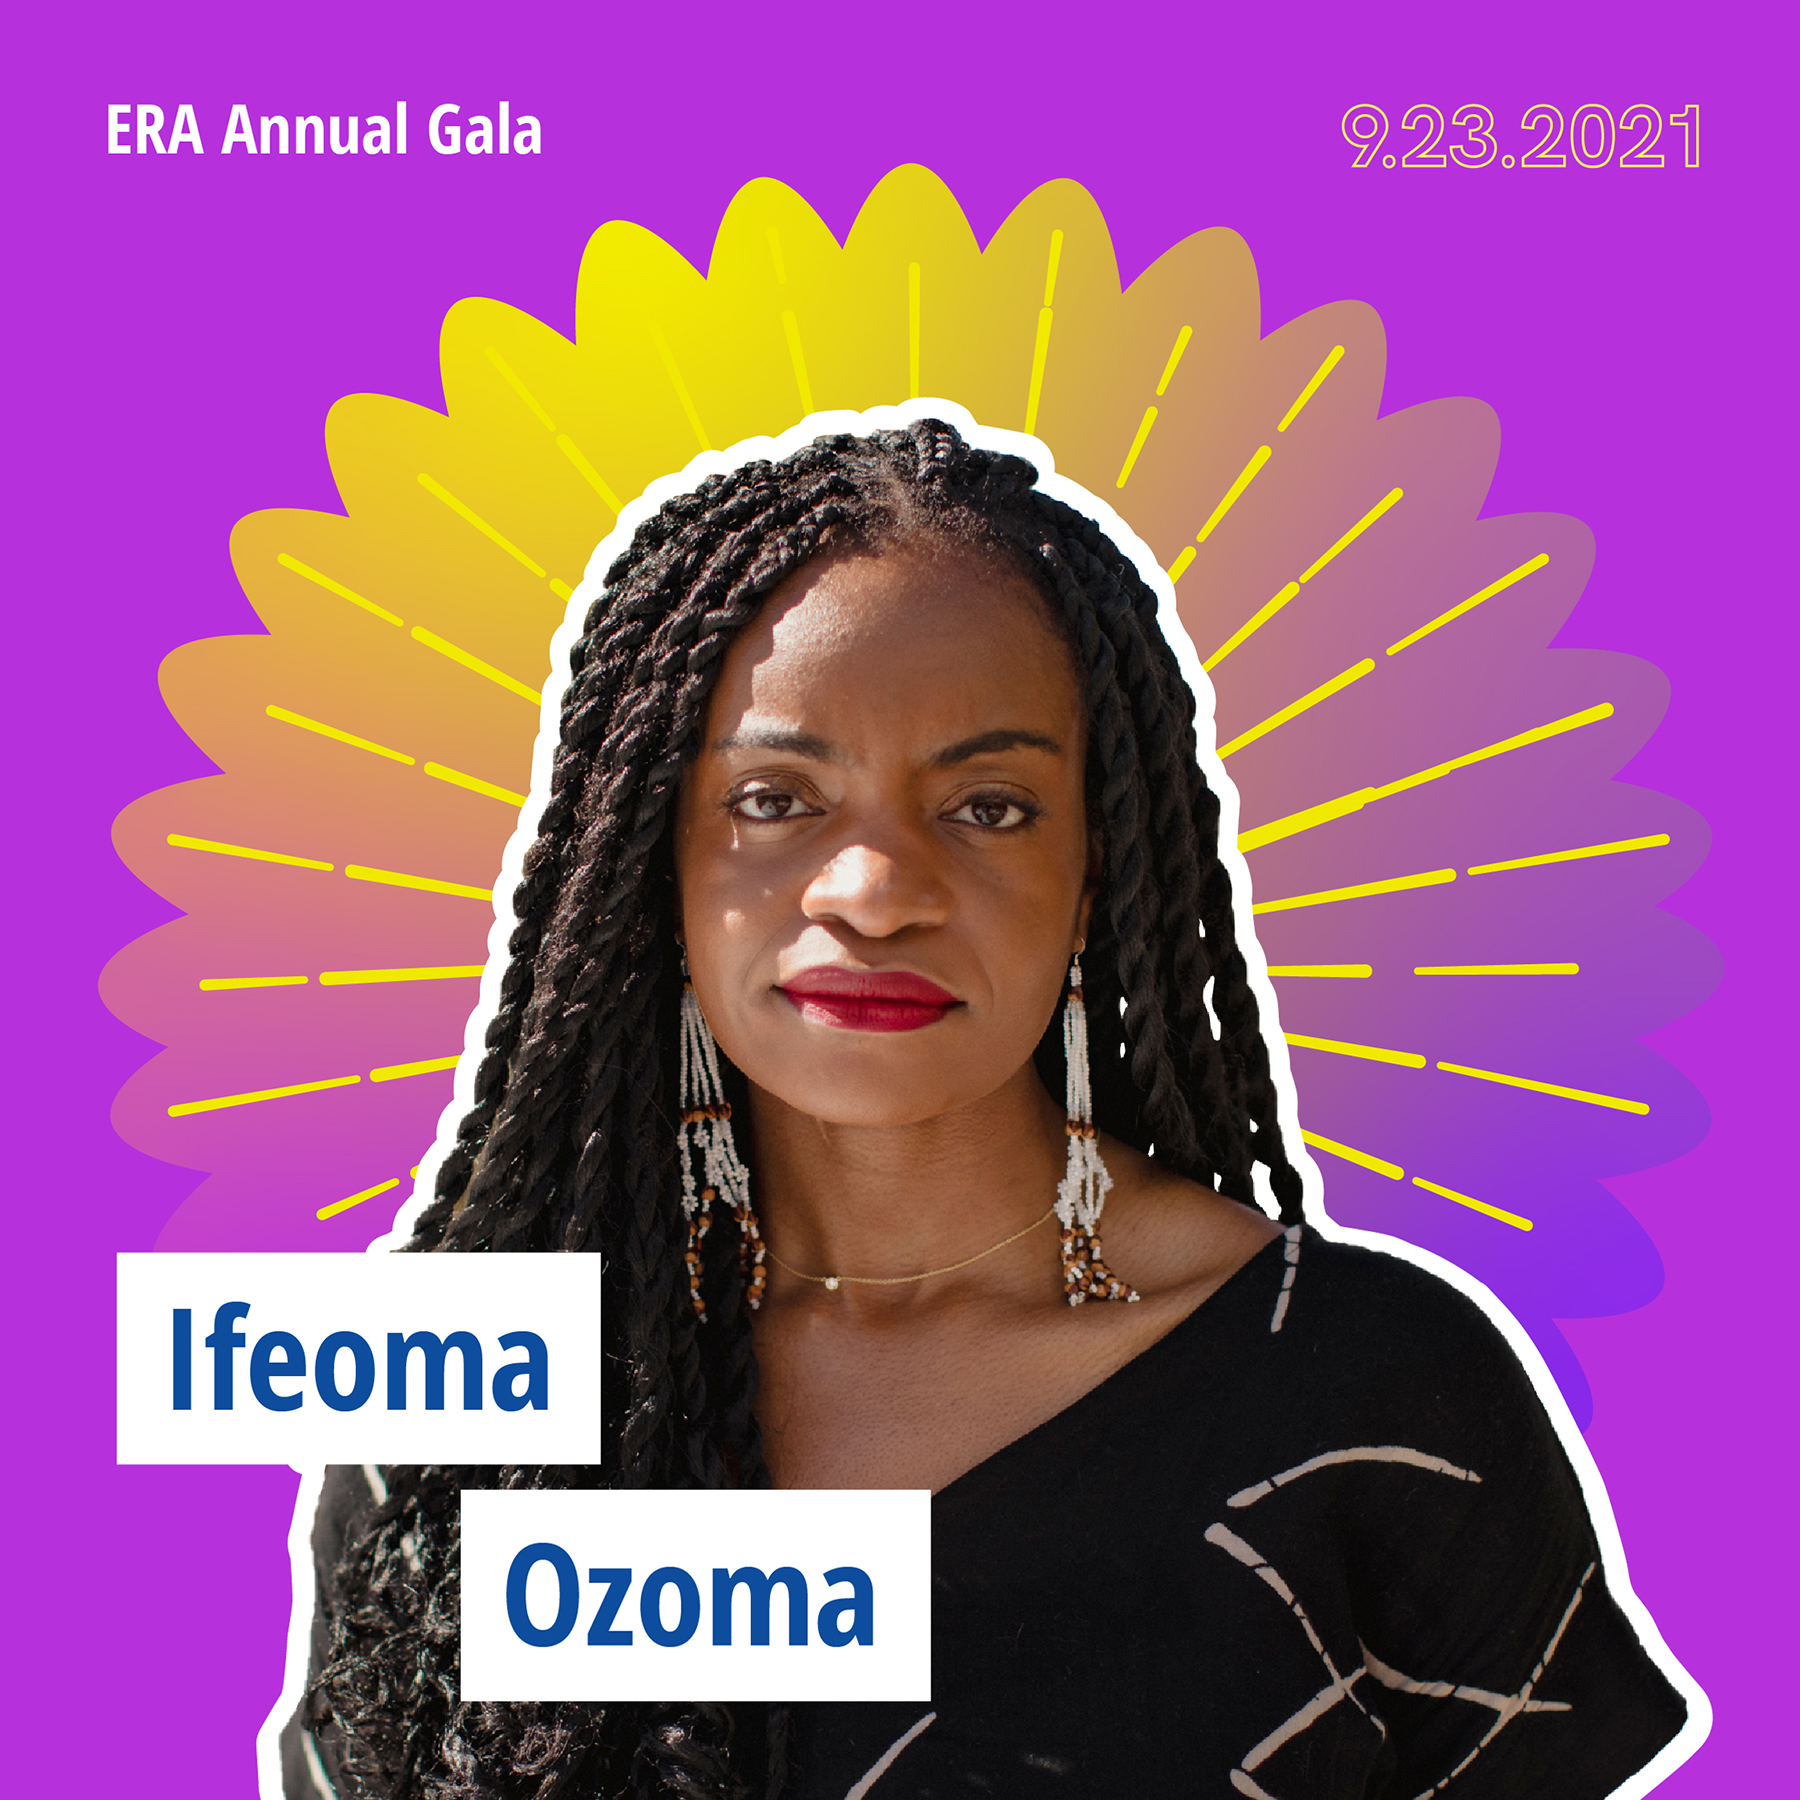 Ifeoma Ozoma